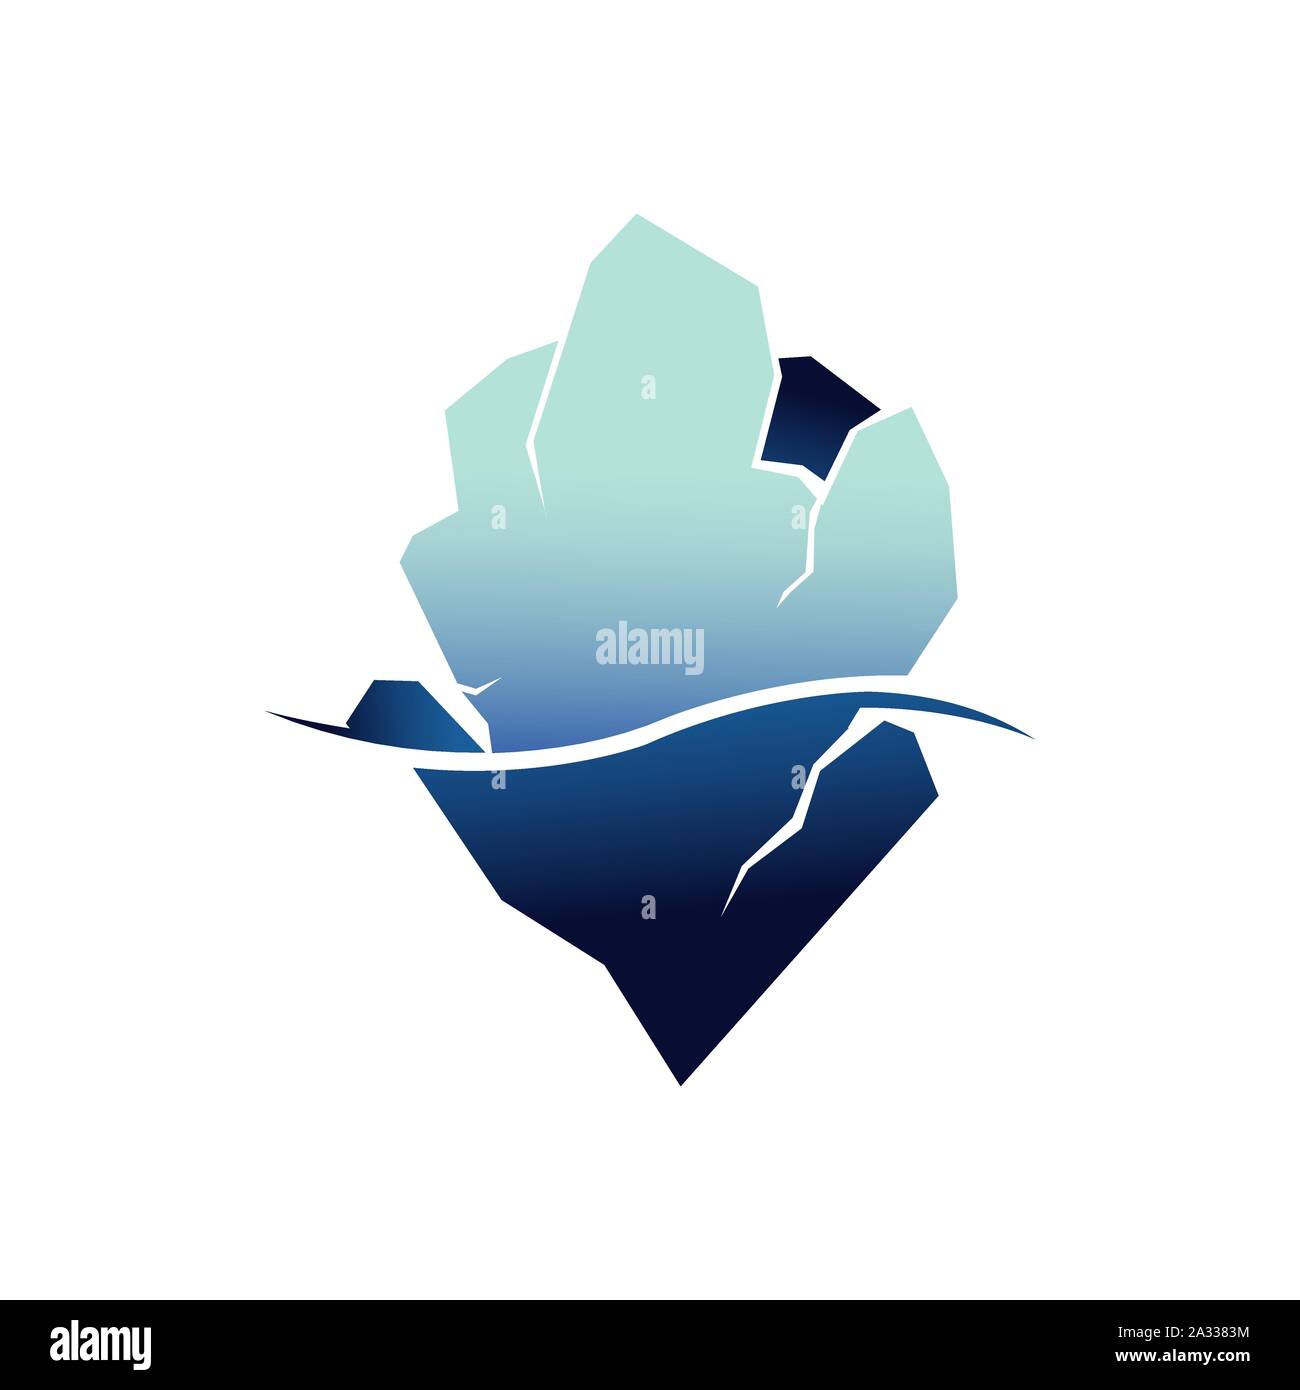 Ghiacciai iceberg logo design illustrazione vettoriale isolati su sfondo bianco Illustrazione Vettoriale